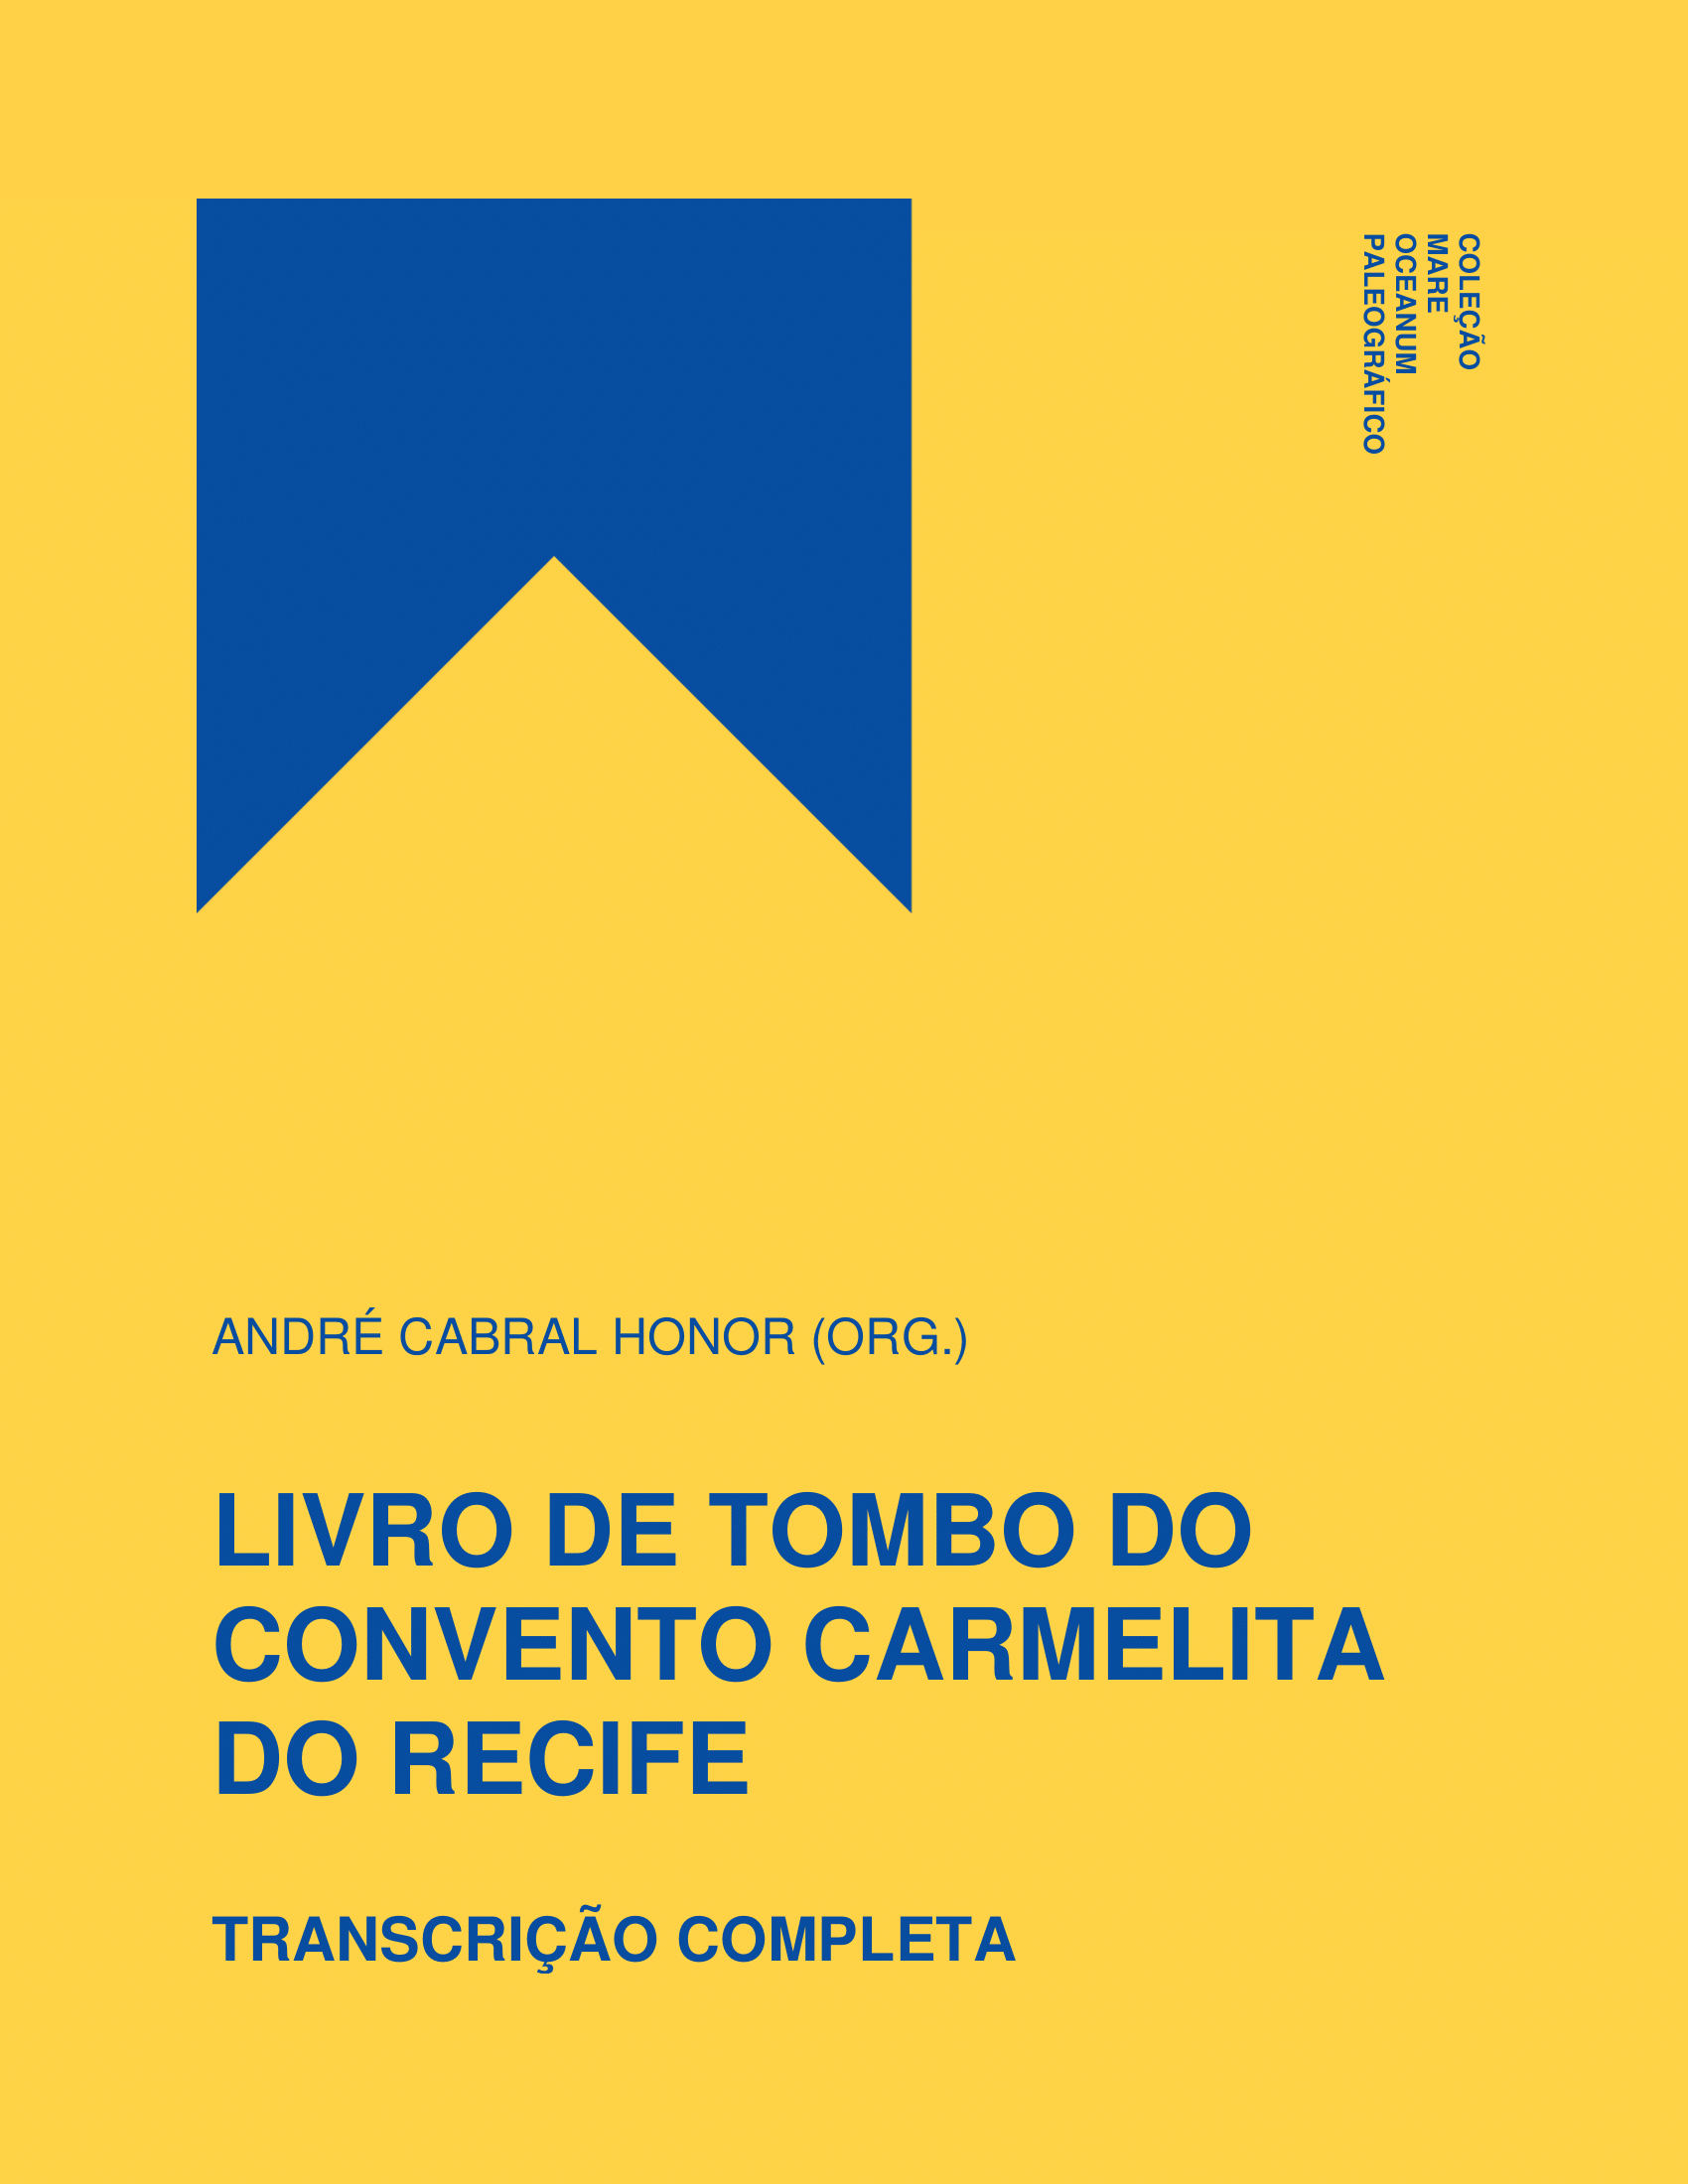 Livro_de_Tombo_do_Convento_Carmelita_do_Recife-001.png